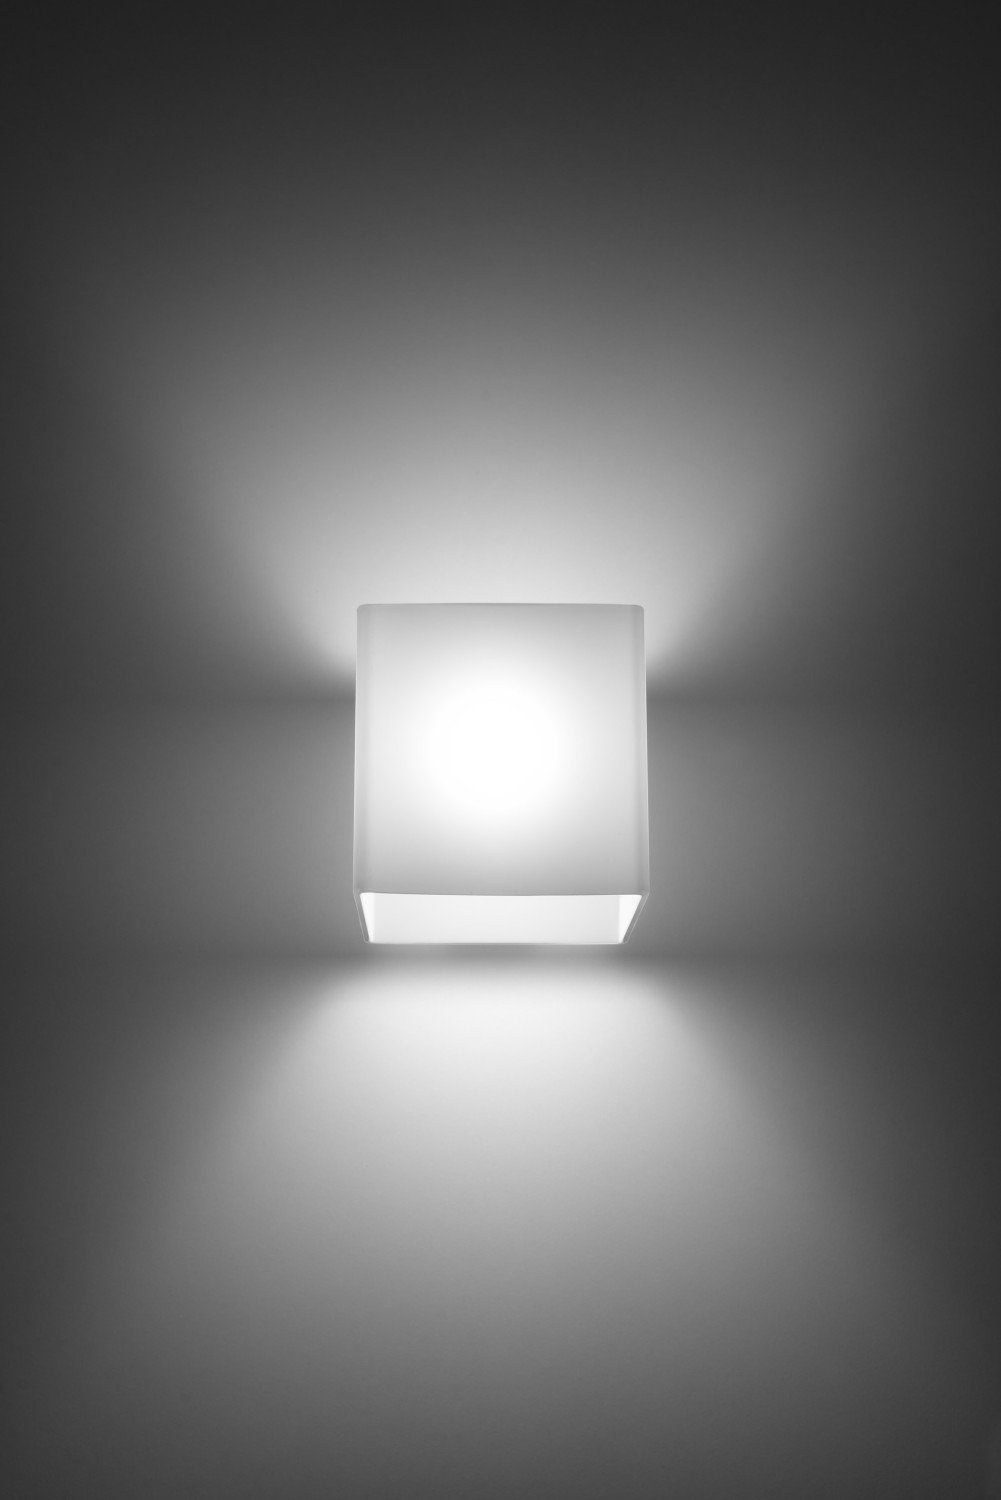 LED Bauhaus Warmweiß, Flur Wandleuchte Hotellampe Schirm Licht-Erlebnisse Glas eckig Weiß wechselbar, Wandlampe Wohnzimmer LIVIO,